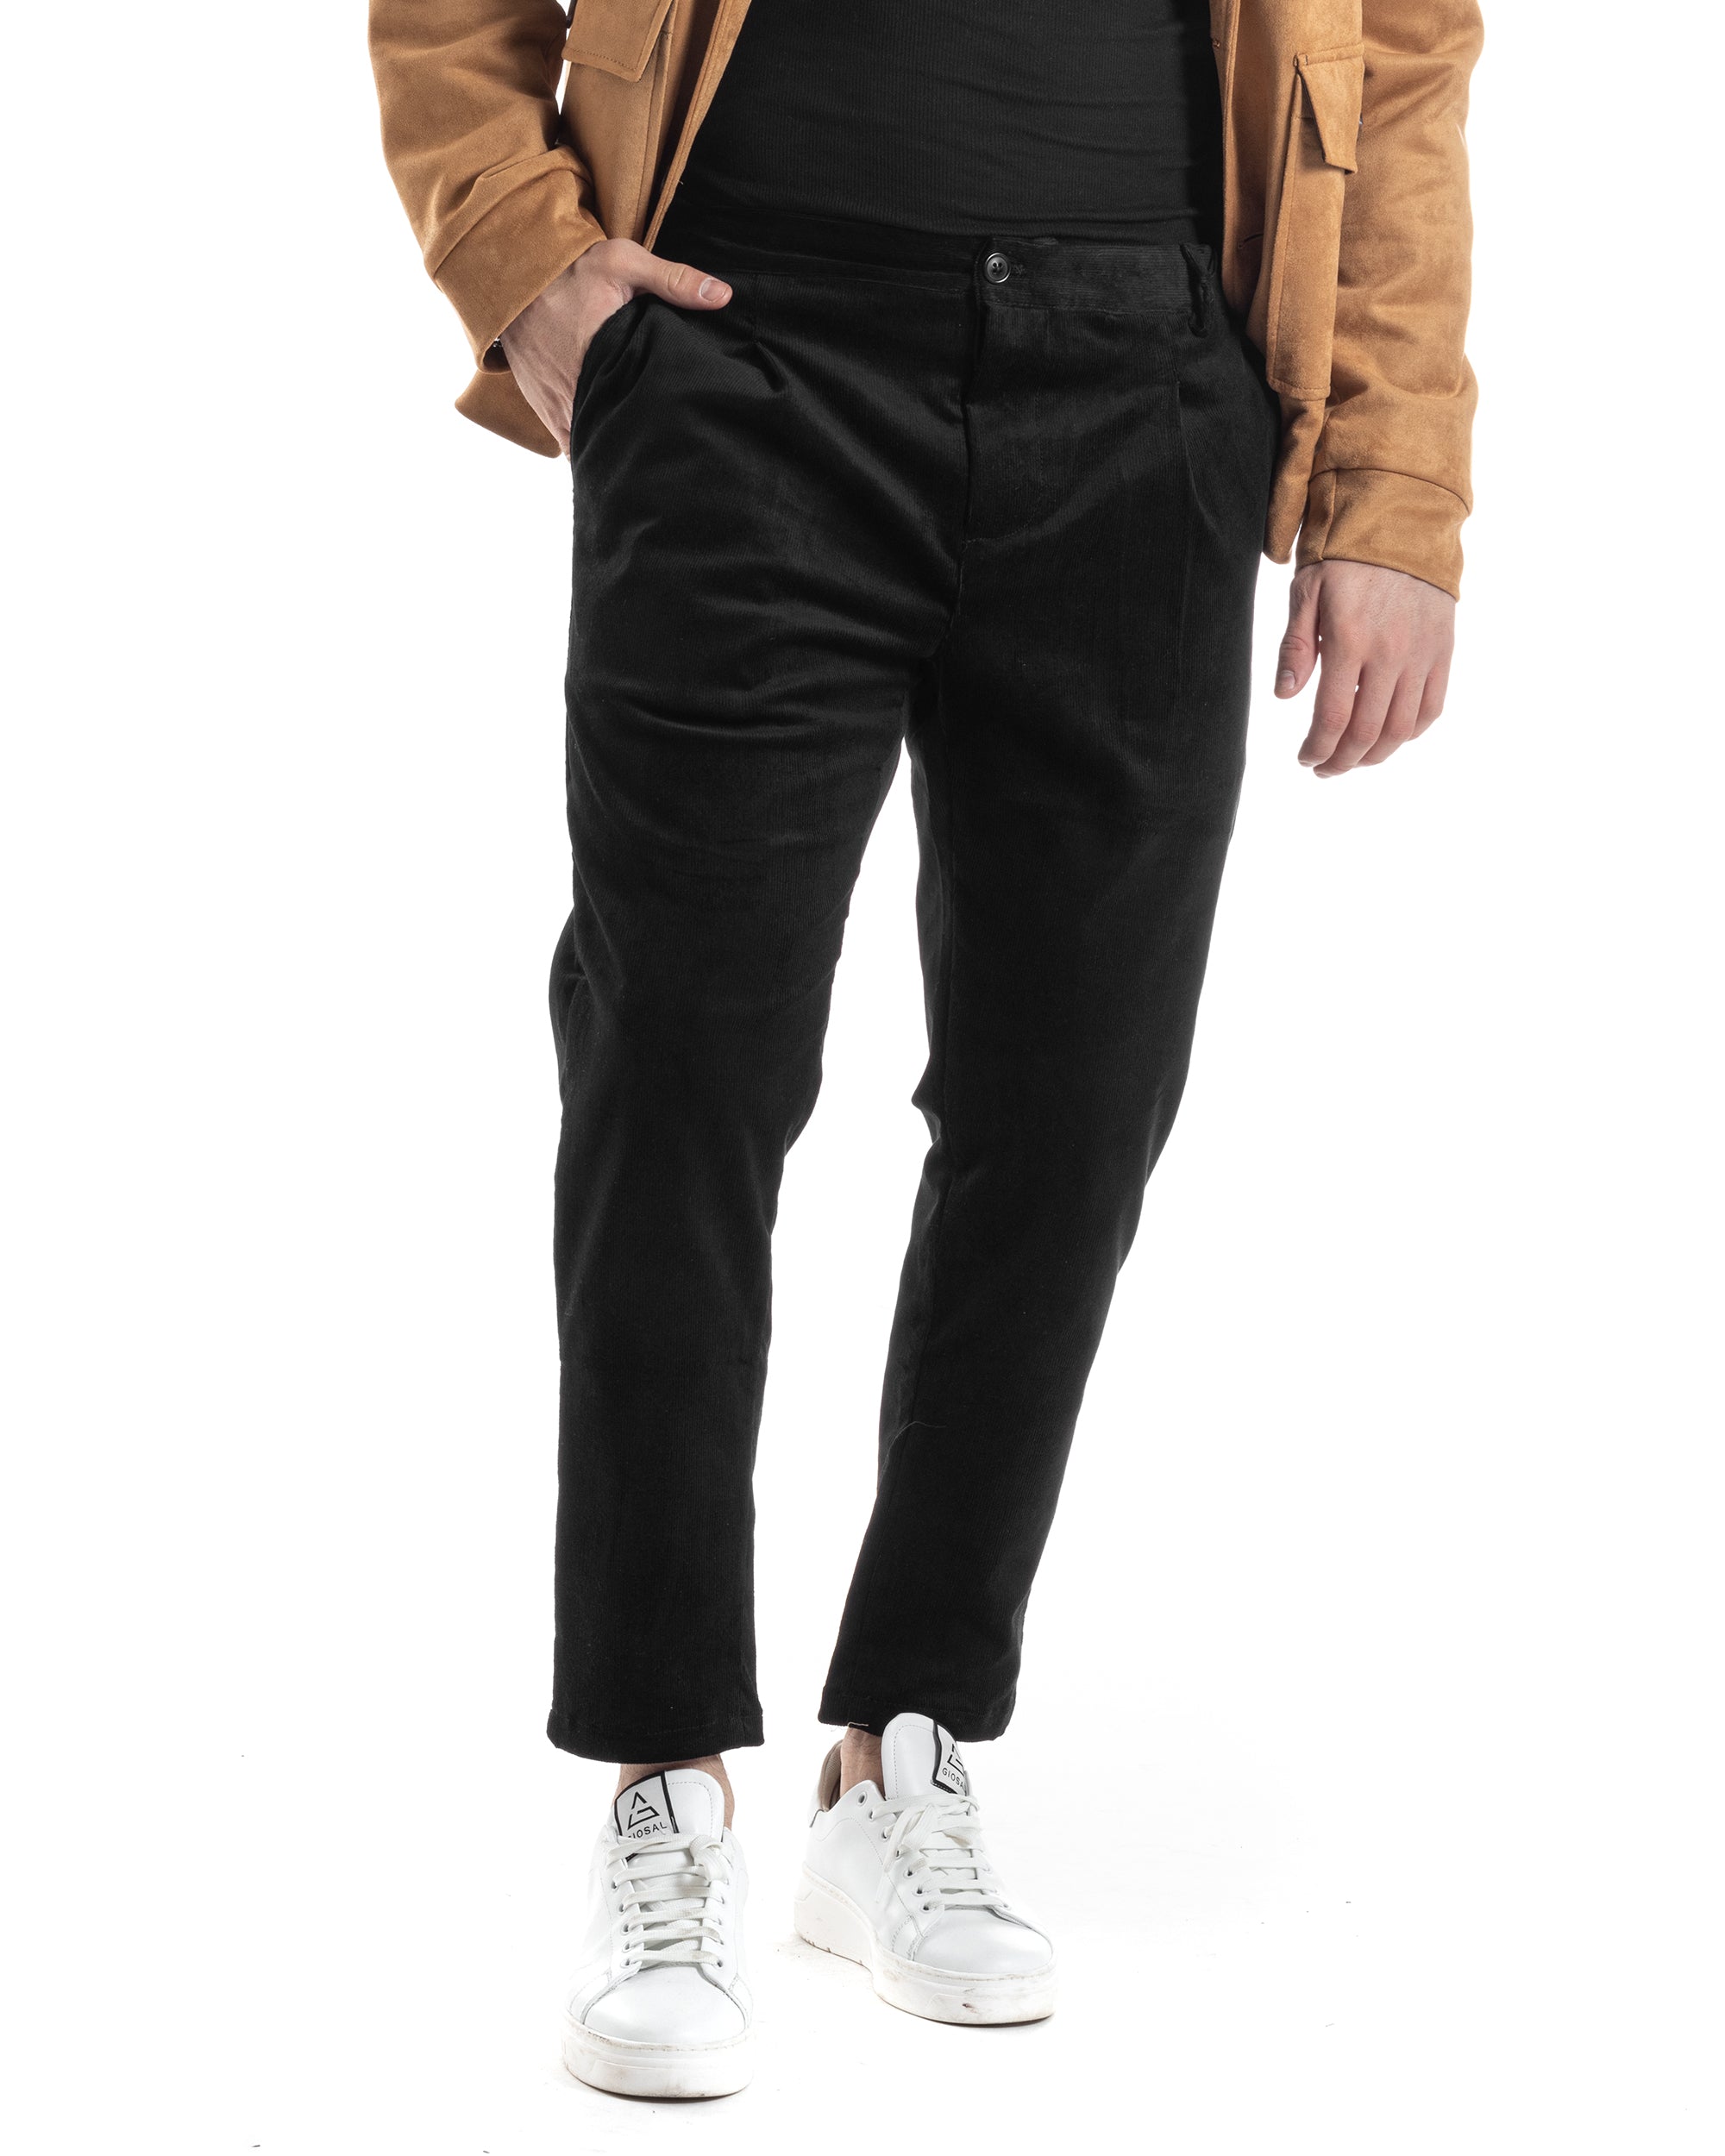 Pantaloni Uomo Tasca America Con Pinces Classico Velluto Costine Nero Casual GIOSAL-P6032A